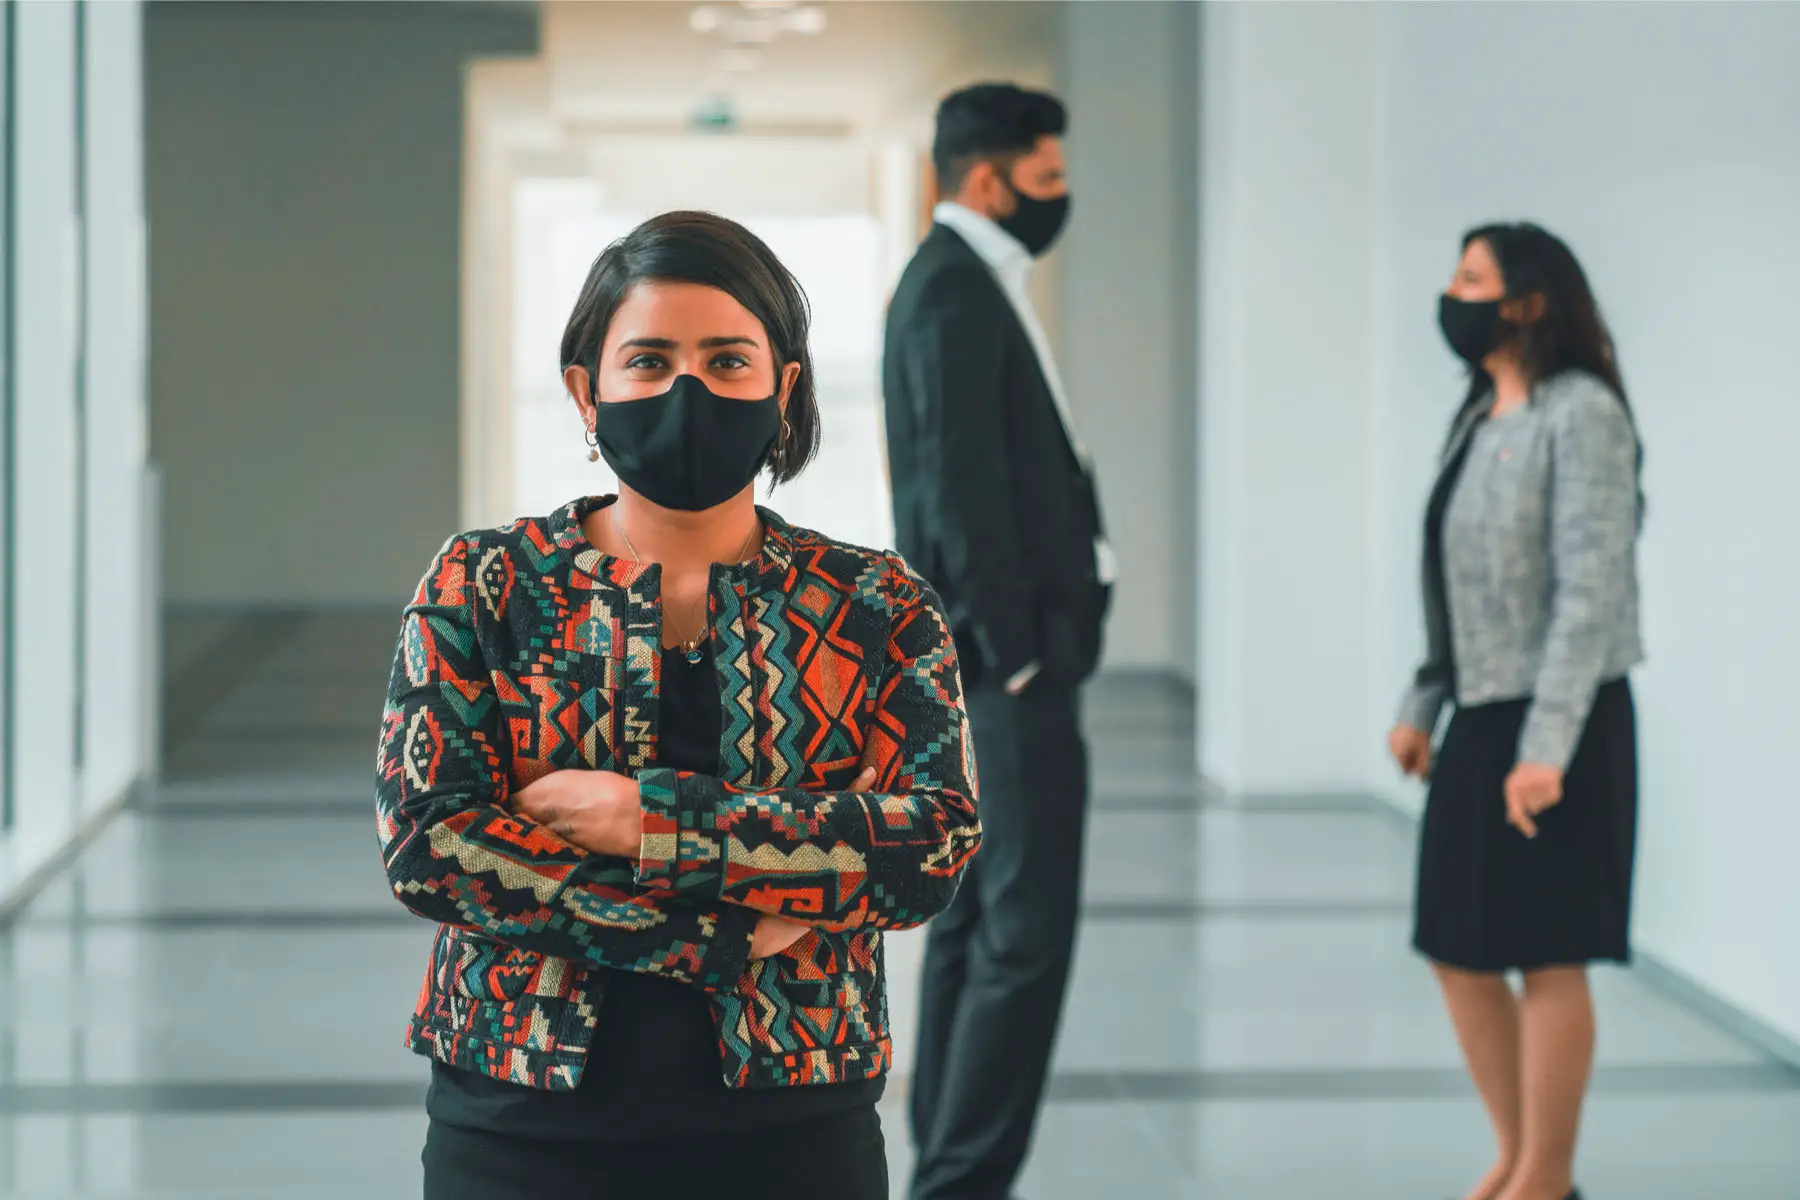 colleagues wear masks as part of UAE coronavirus measures